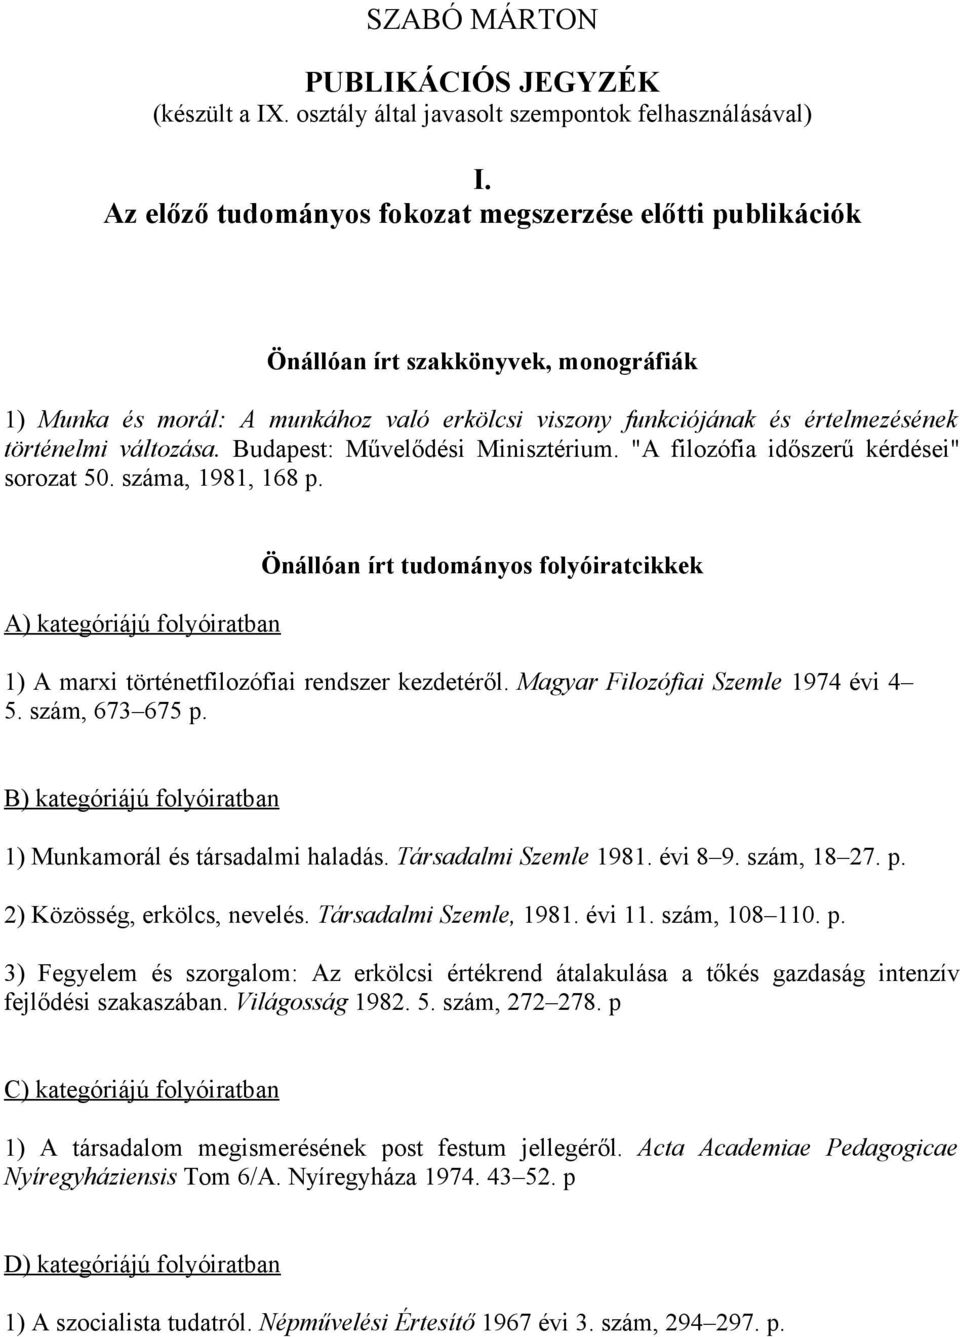 változása. Budapest: Művelődési Minisztérium. "A filozófia időszerű kérdései" sorozat 50. száma, 1981, 168 p.